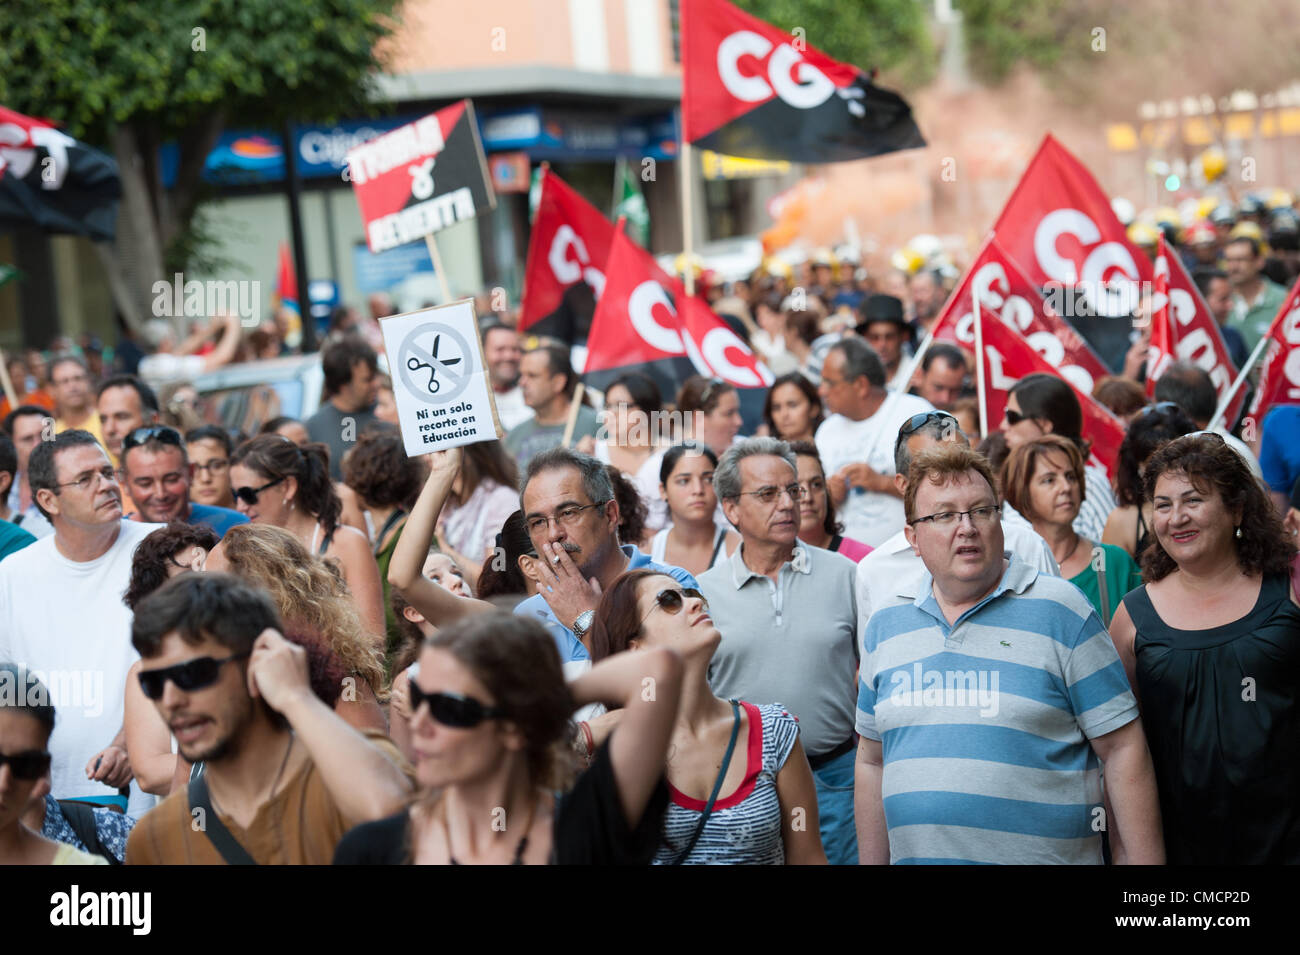 LAS PALMAS SPAGNA-luglio 19: massicce manifestazioni di protesta contro la crisi di governo pagare tagli, durante la manifestazione spagnola 19J sulla luglio 19, 2012 a Las Palmas Spagna Foto Stock